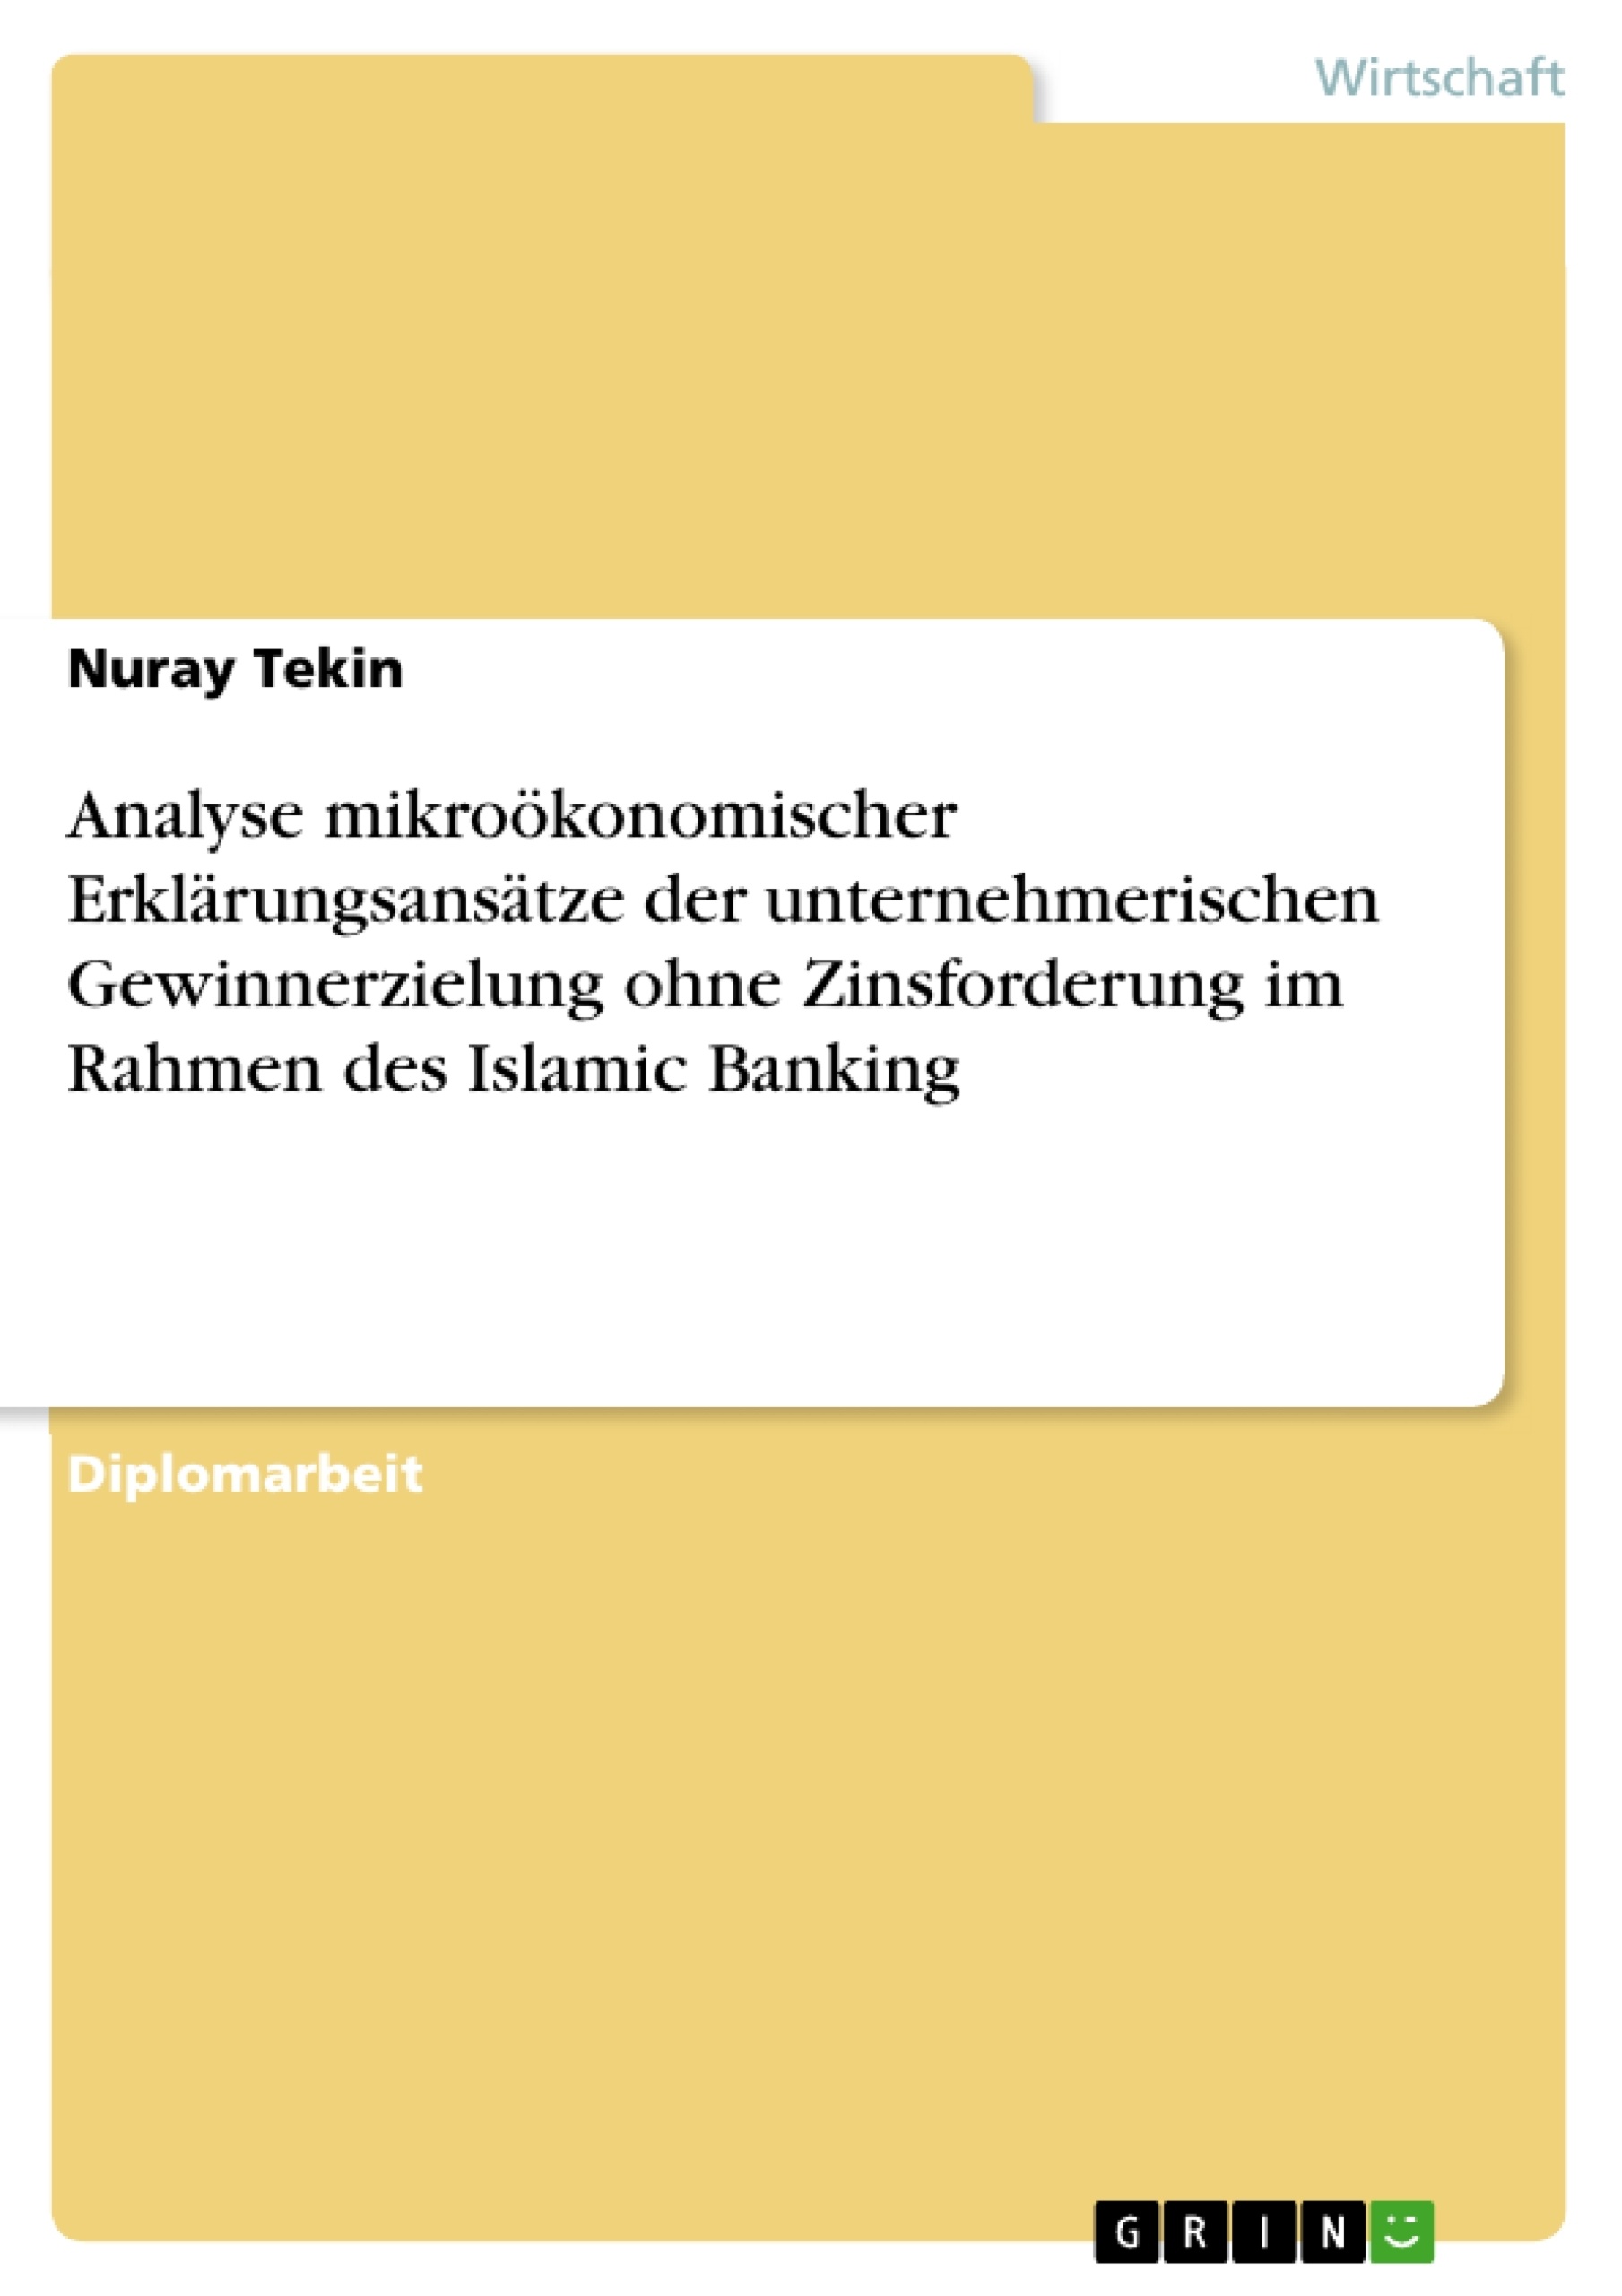 Titre: Analyse mikroökonomischer Erklärungsansätze der unternehmerischen Gewinnerzielung ohne Zinsforderung im Rahmen des Islamic Banking